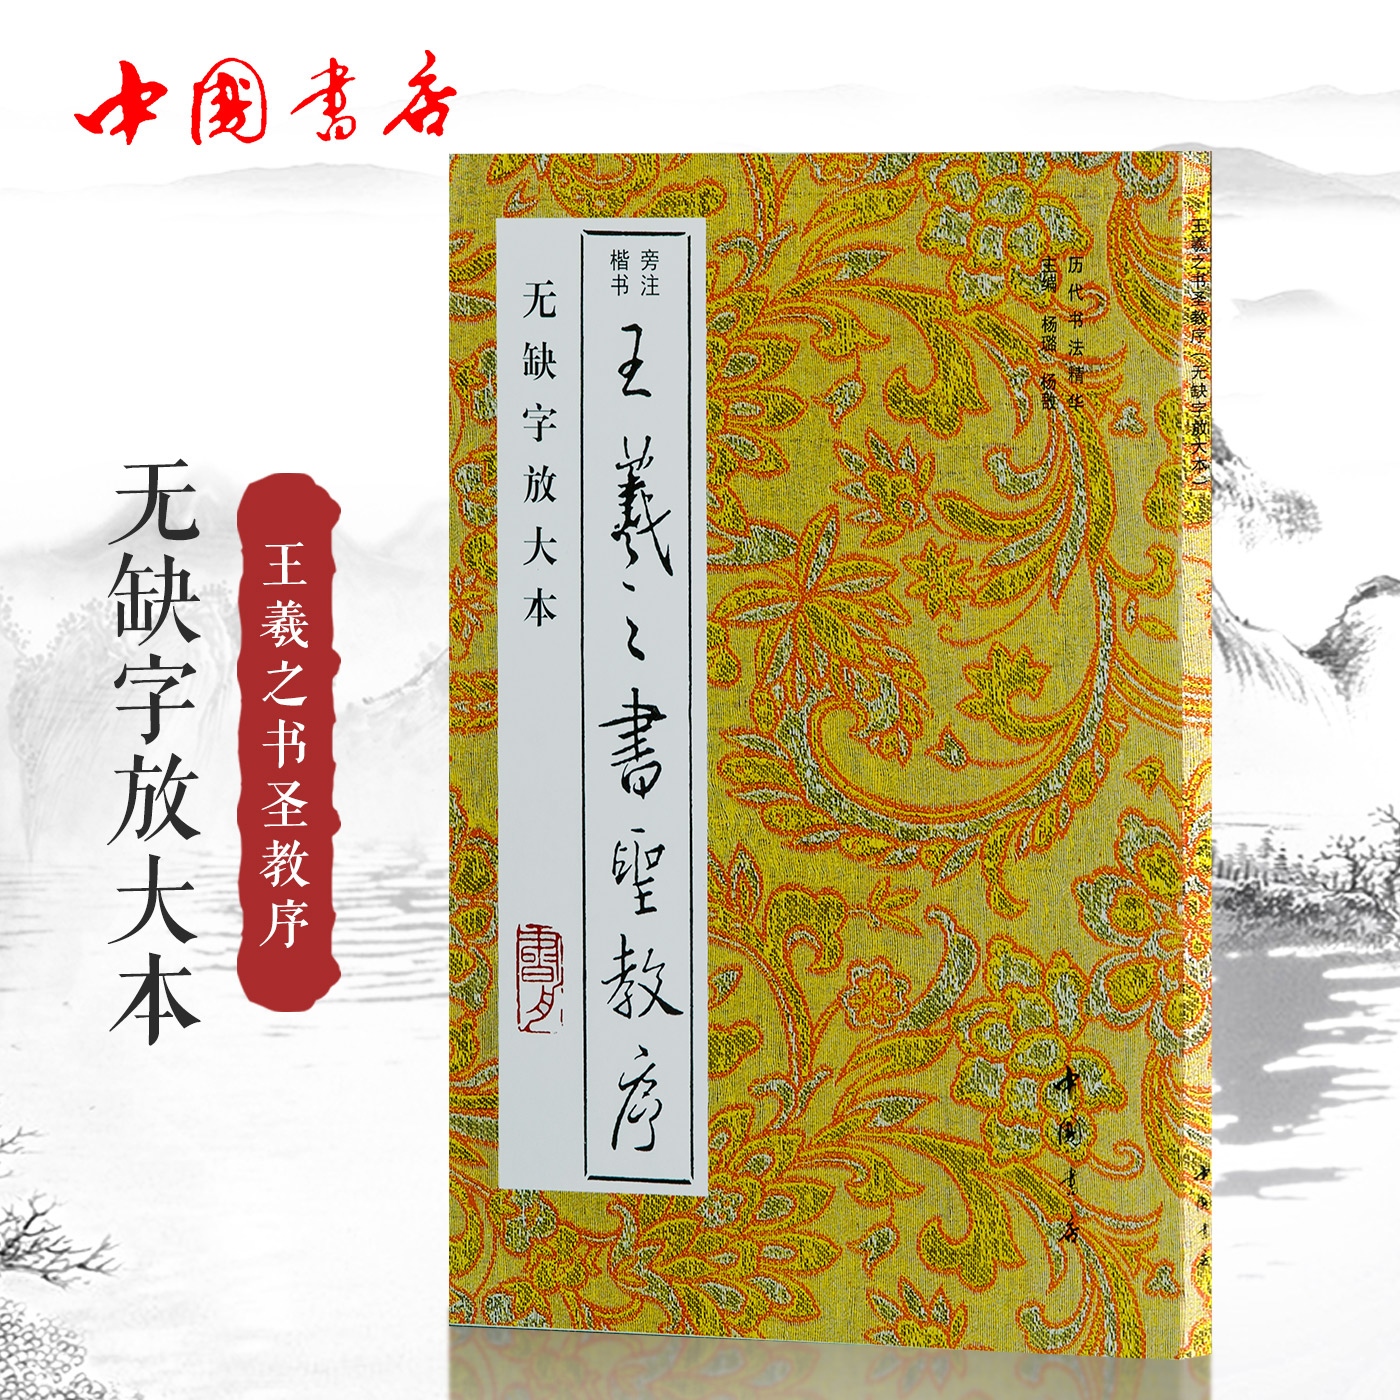 王羲之书圣教序 无缺字本放大 中国书店出版社